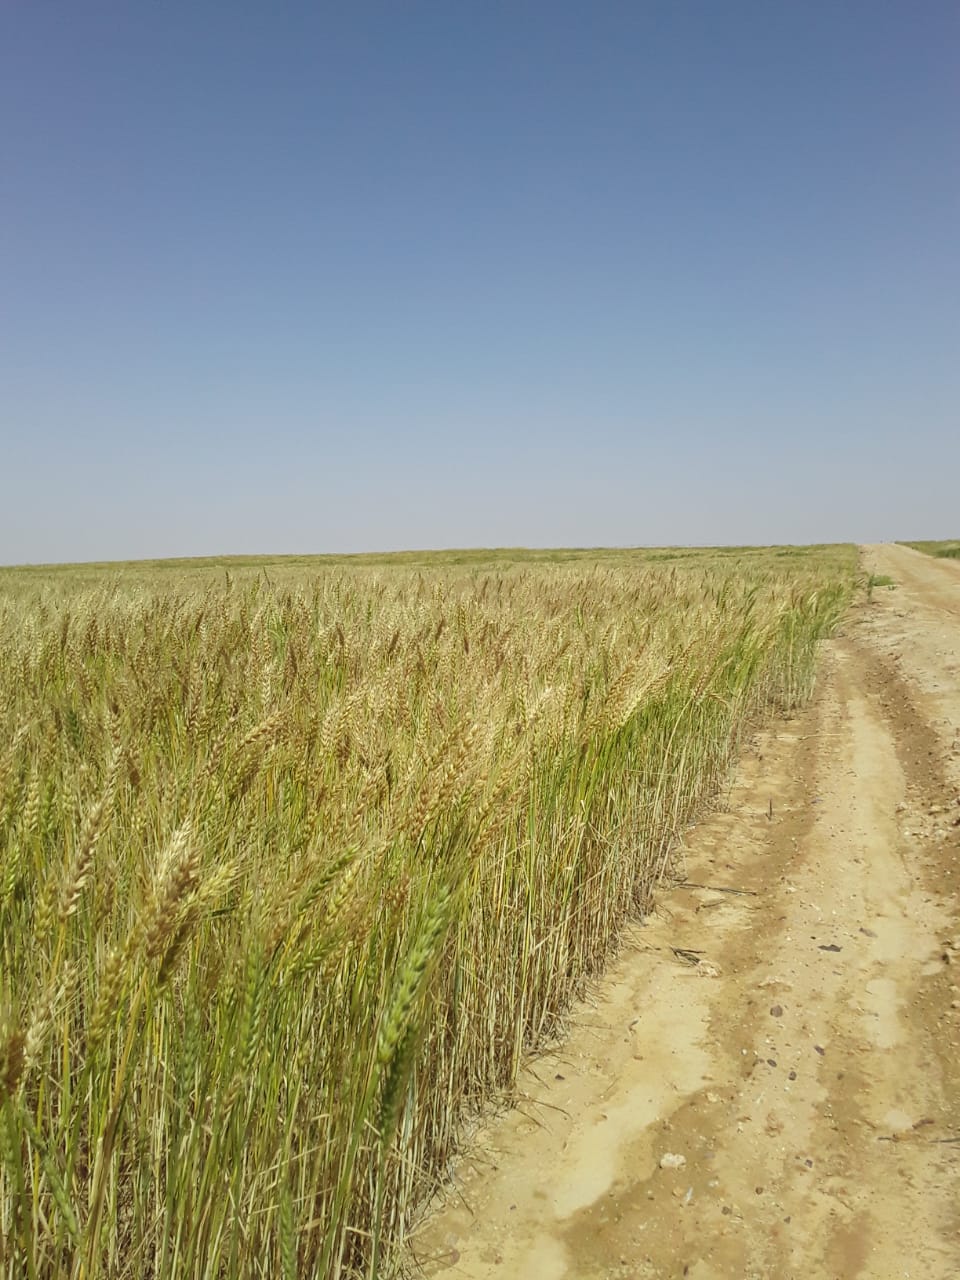 القمح  بمشروع غرب المنيا  (2)